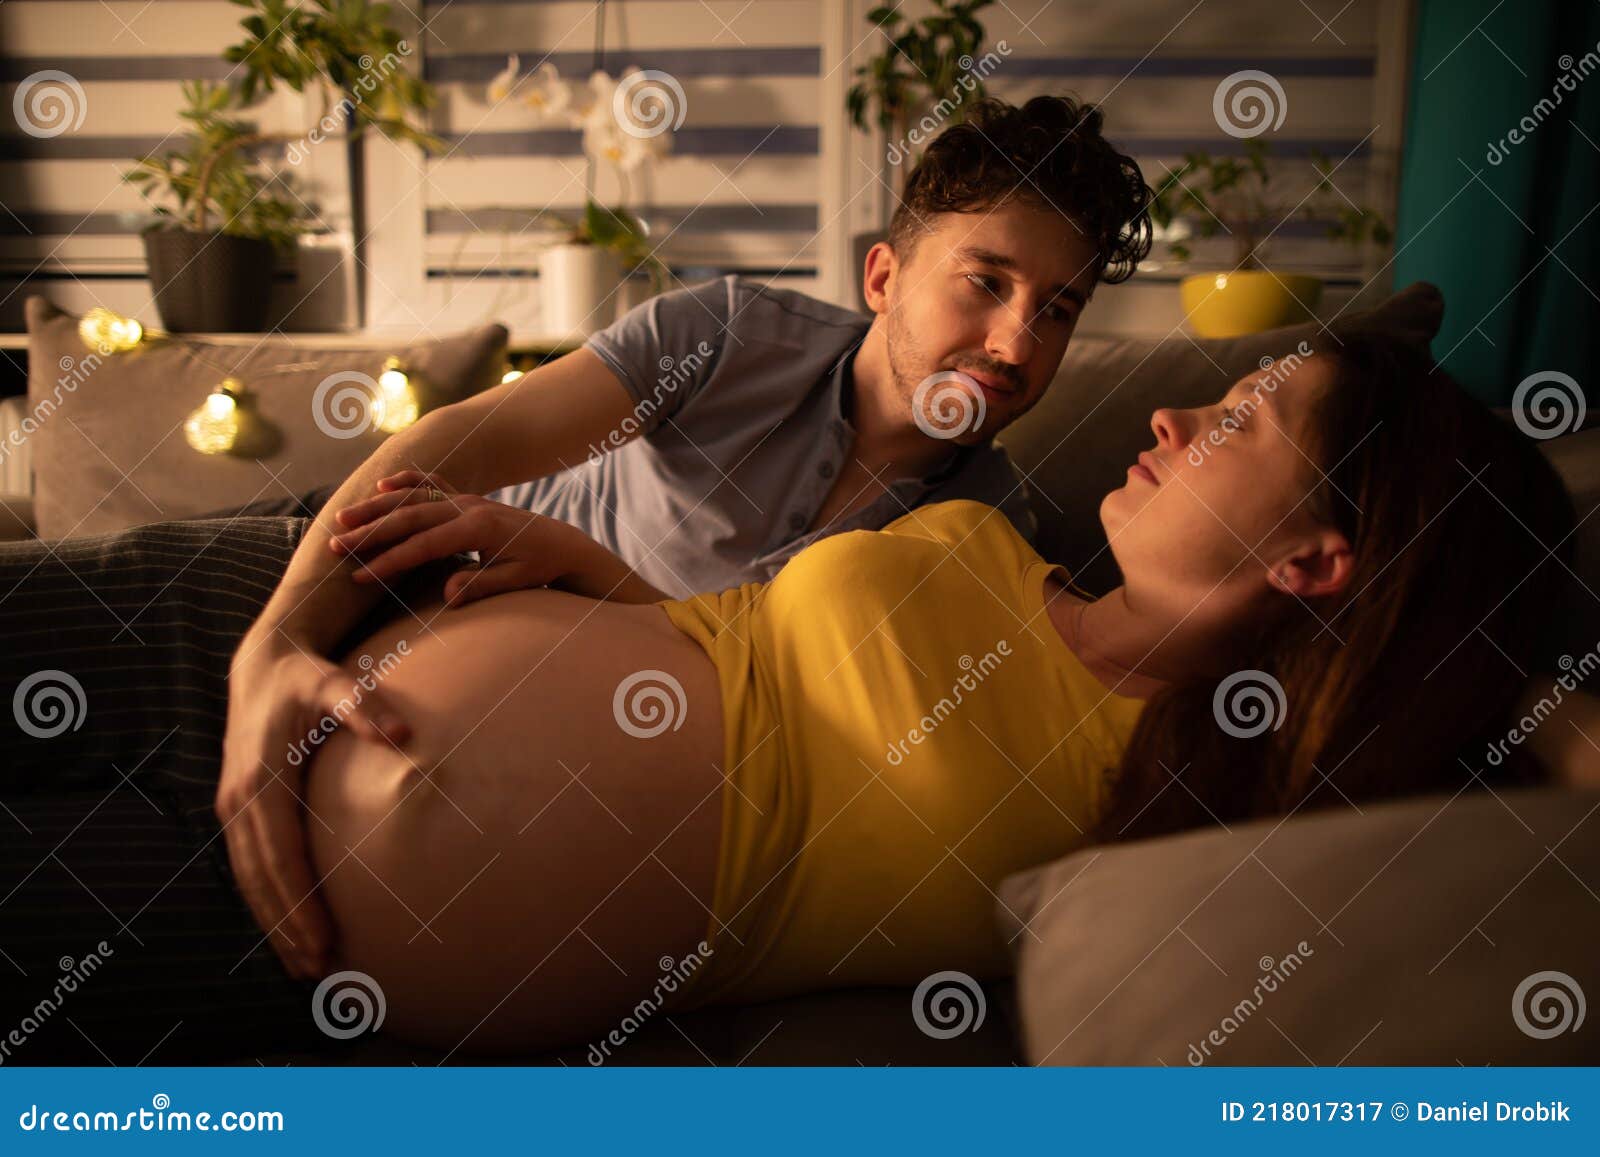 Сон изменял жене приснился. Муж обнимает беременную жену. Муж обнимает супругу. Муж обнимает жену в кровати. Лежим на кровати с женой с беременной.